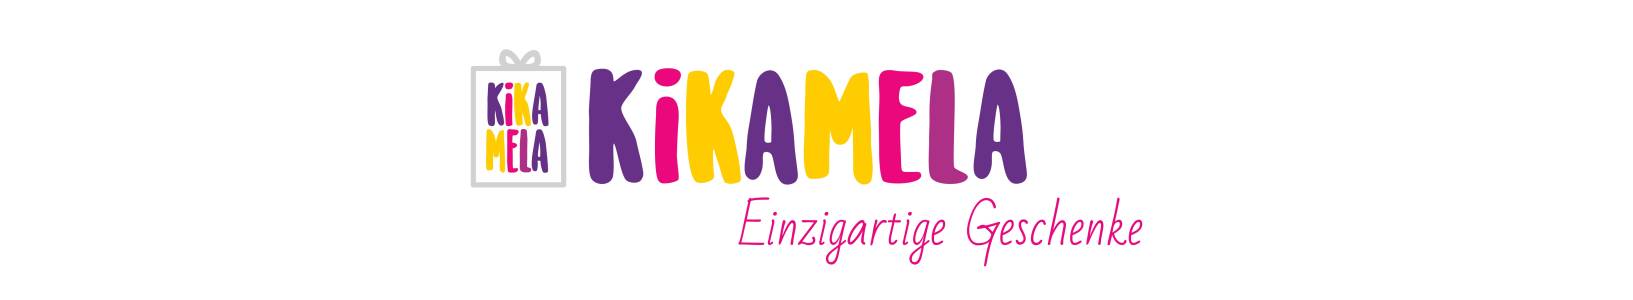 Kikamela Shop | kasuwa.de